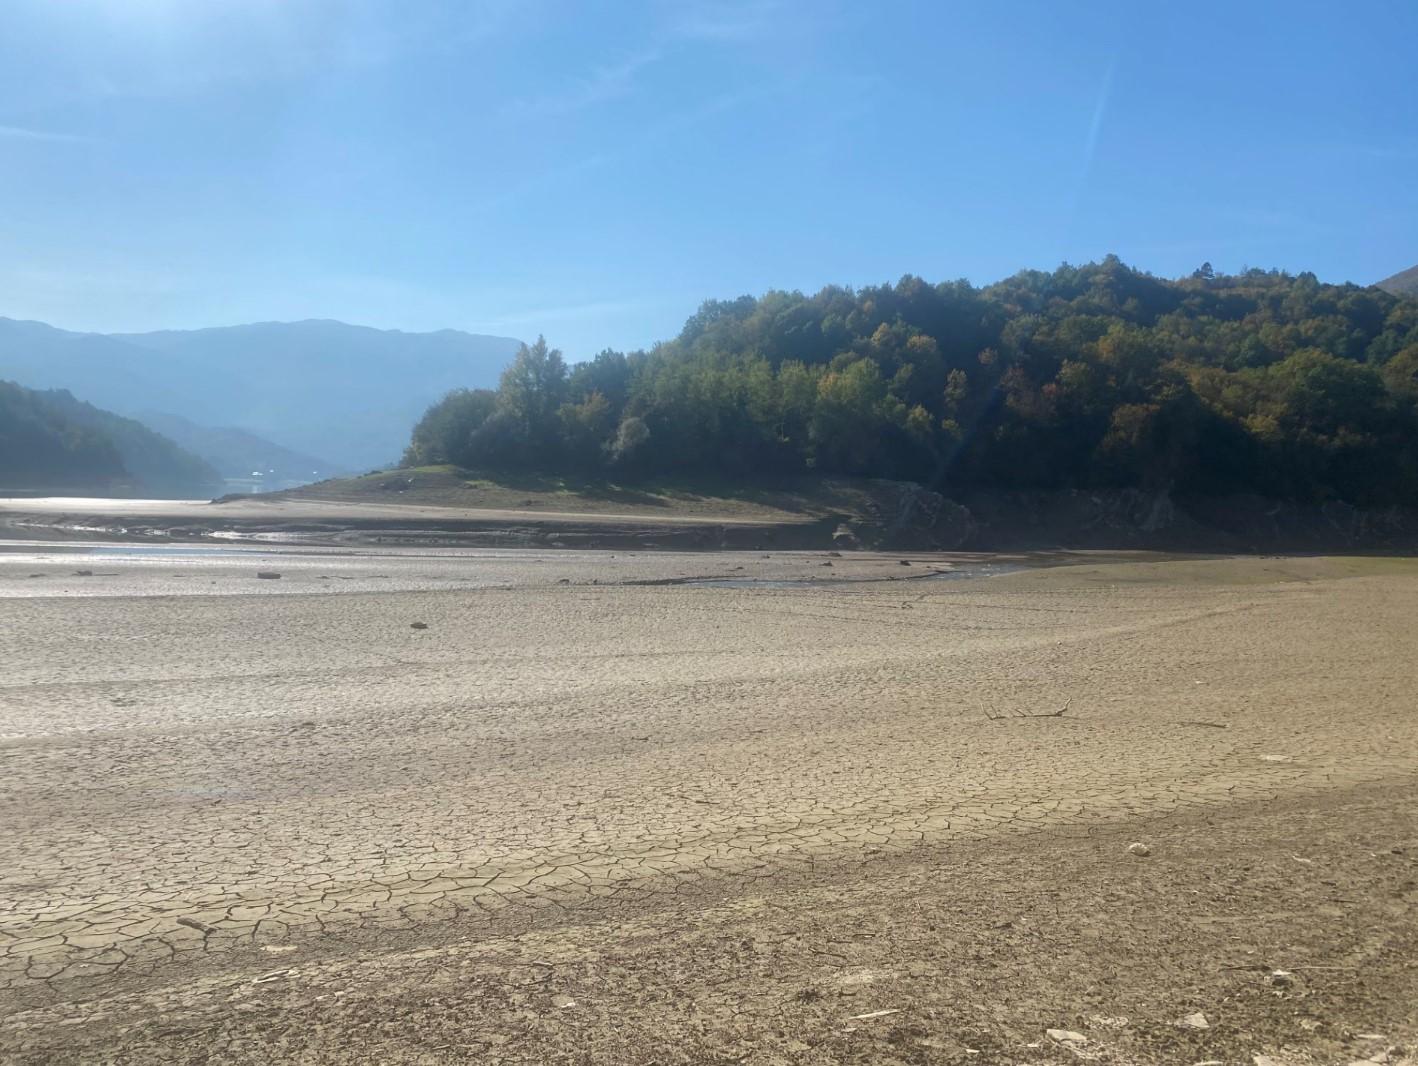 Jablaničko jezero presušilo: Kroz naslage pijeska i blata vijugaju potočići